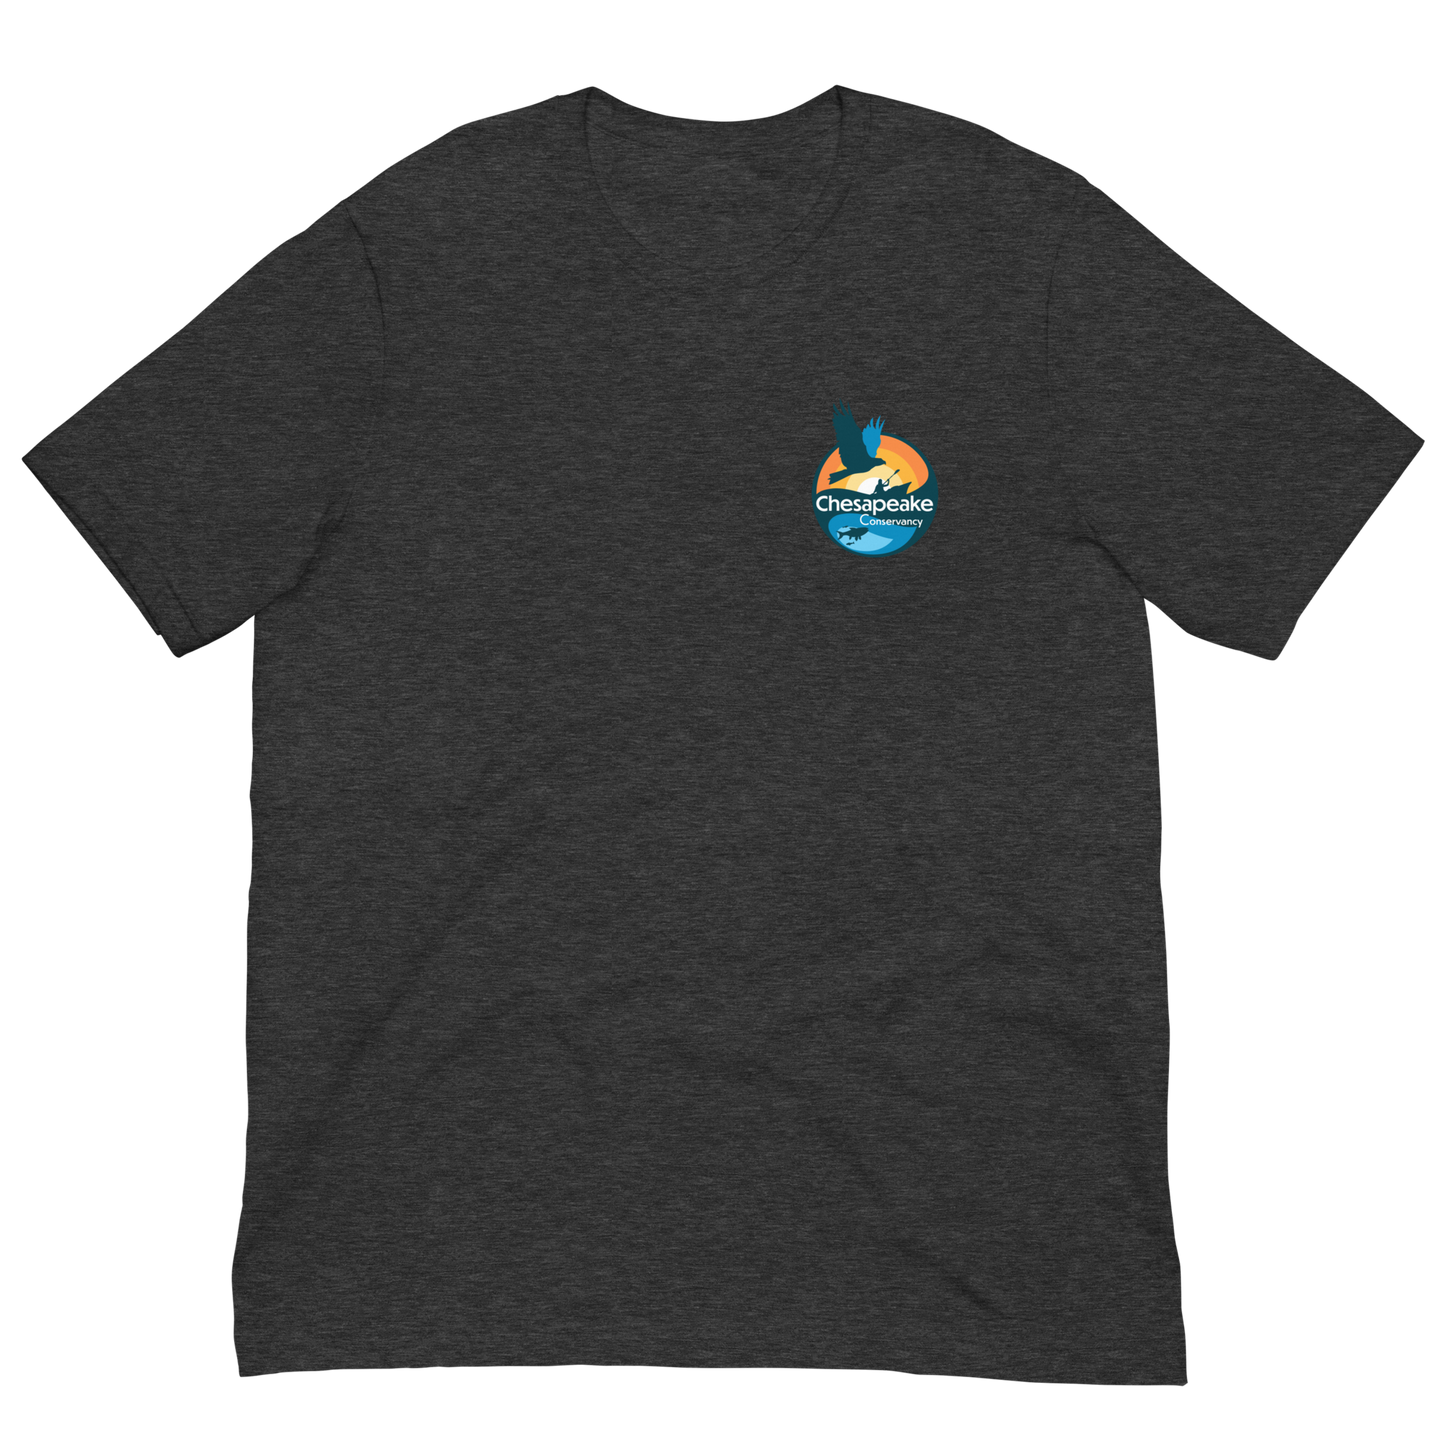 Fones Cliffs - Unisex T-shirt